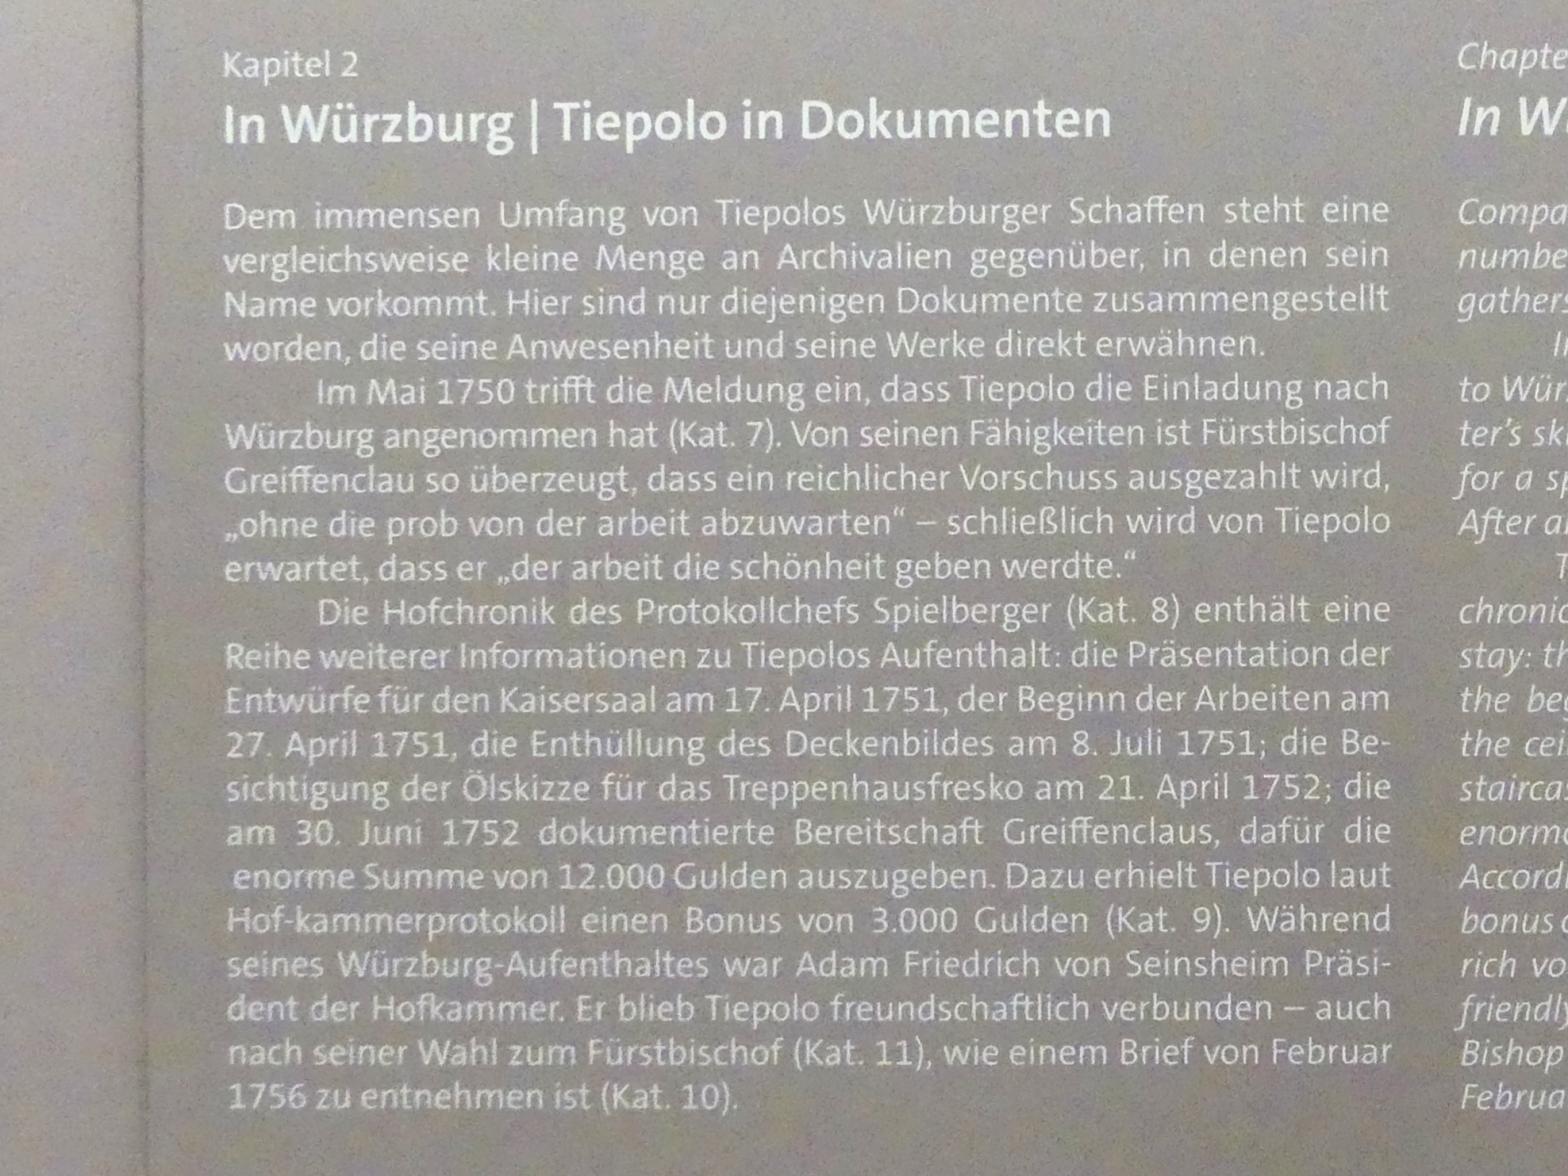 Würzburg, Martin von Wagner Museum, Ausstellung "Tiepolo und seine Zeit in Würzburg" vom 31.10.2020-15.07.2021, Bild 10/12